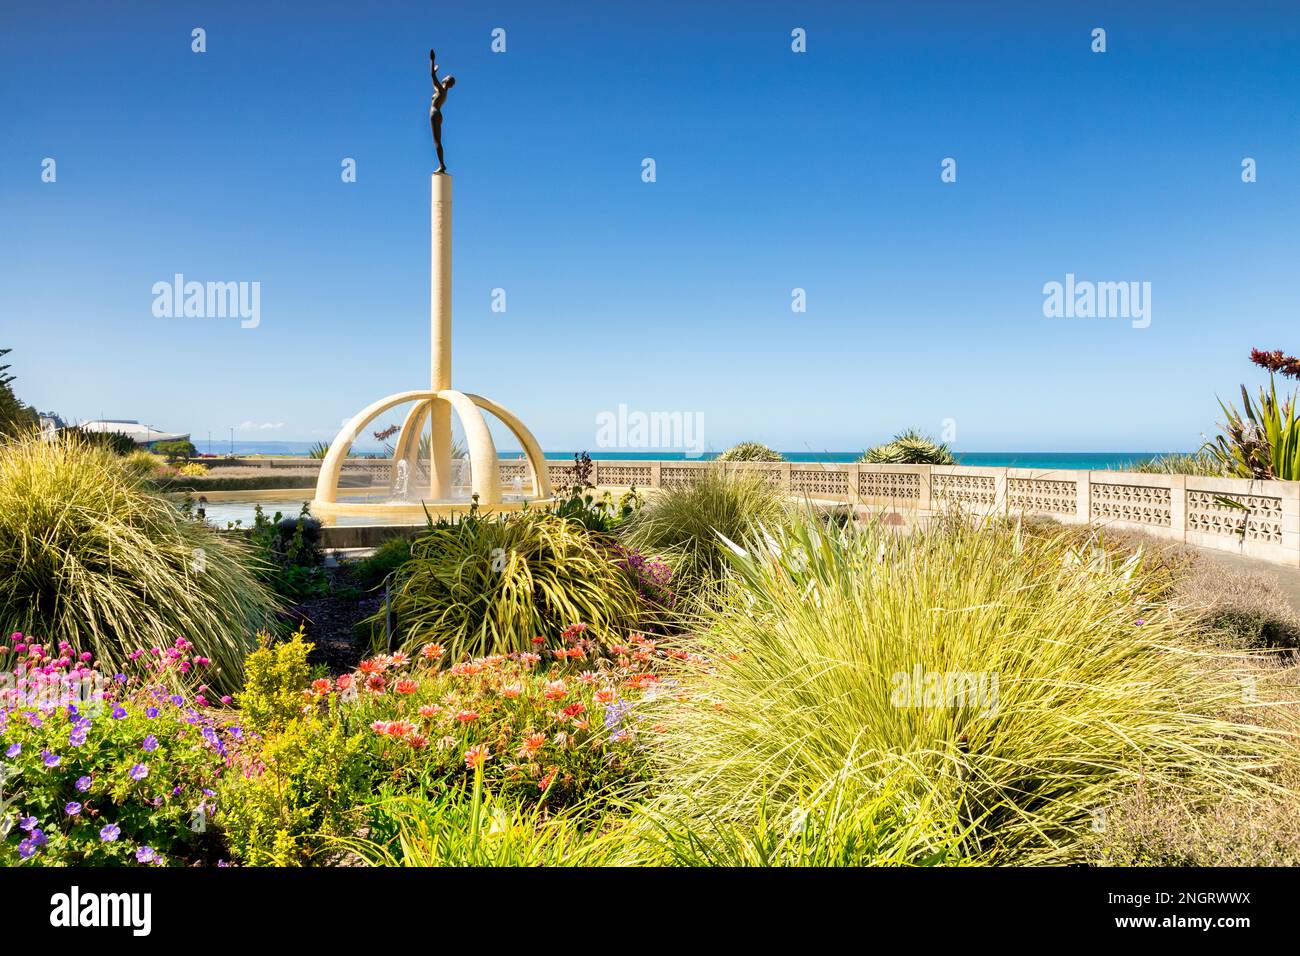 5 dicembre 2022: Napier, Hawkes Bay, Nuova Zelanda - Pania della barriera corallina, scultura su Marine Parade, situato in un bellissimo giardino. Glorioso tempo estivo. Foto Stock